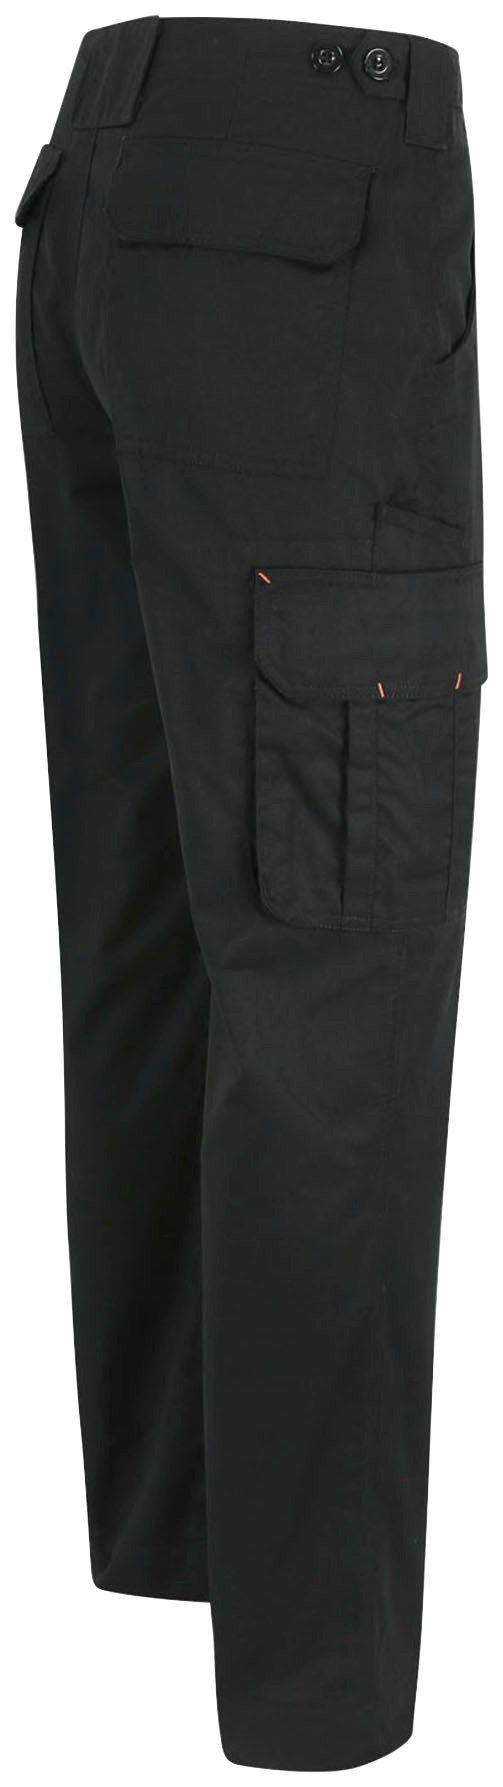 Arbeitshose Farben Bund, viele leicht, einstellbarer Hose Taschen, Herock Thor 7 Wasserabweisend, schwarz